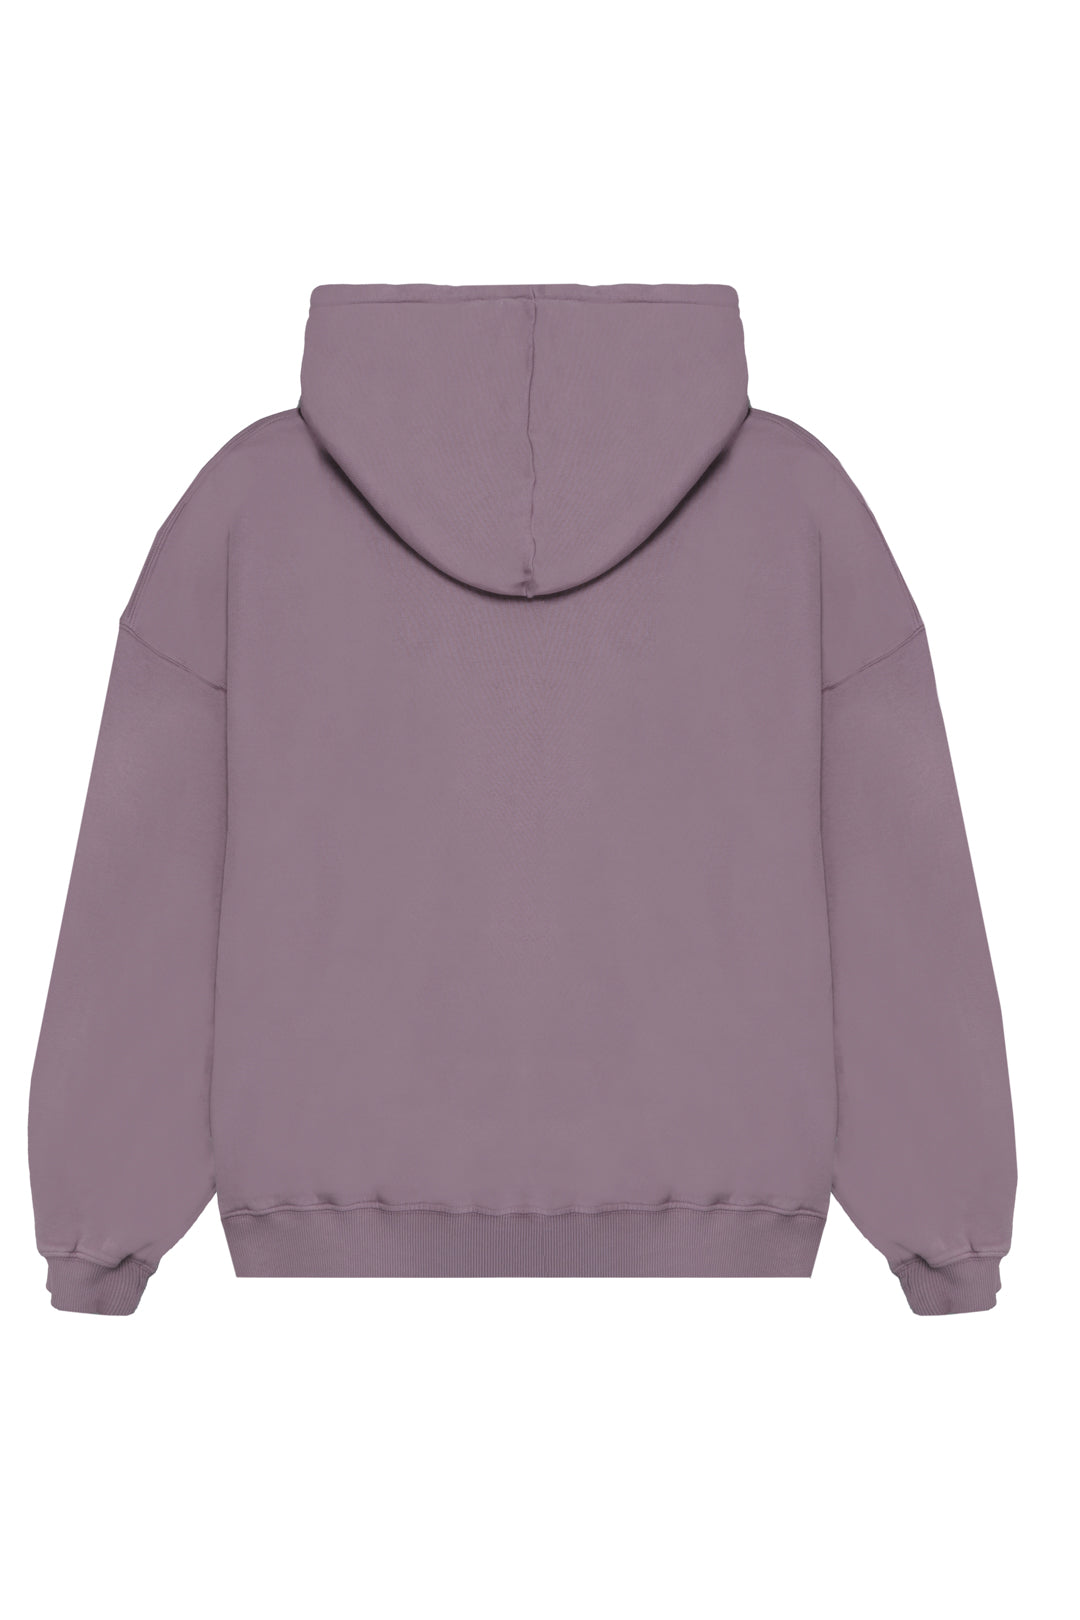 Oversized Sweatshirt 320 gsm - Elderberry